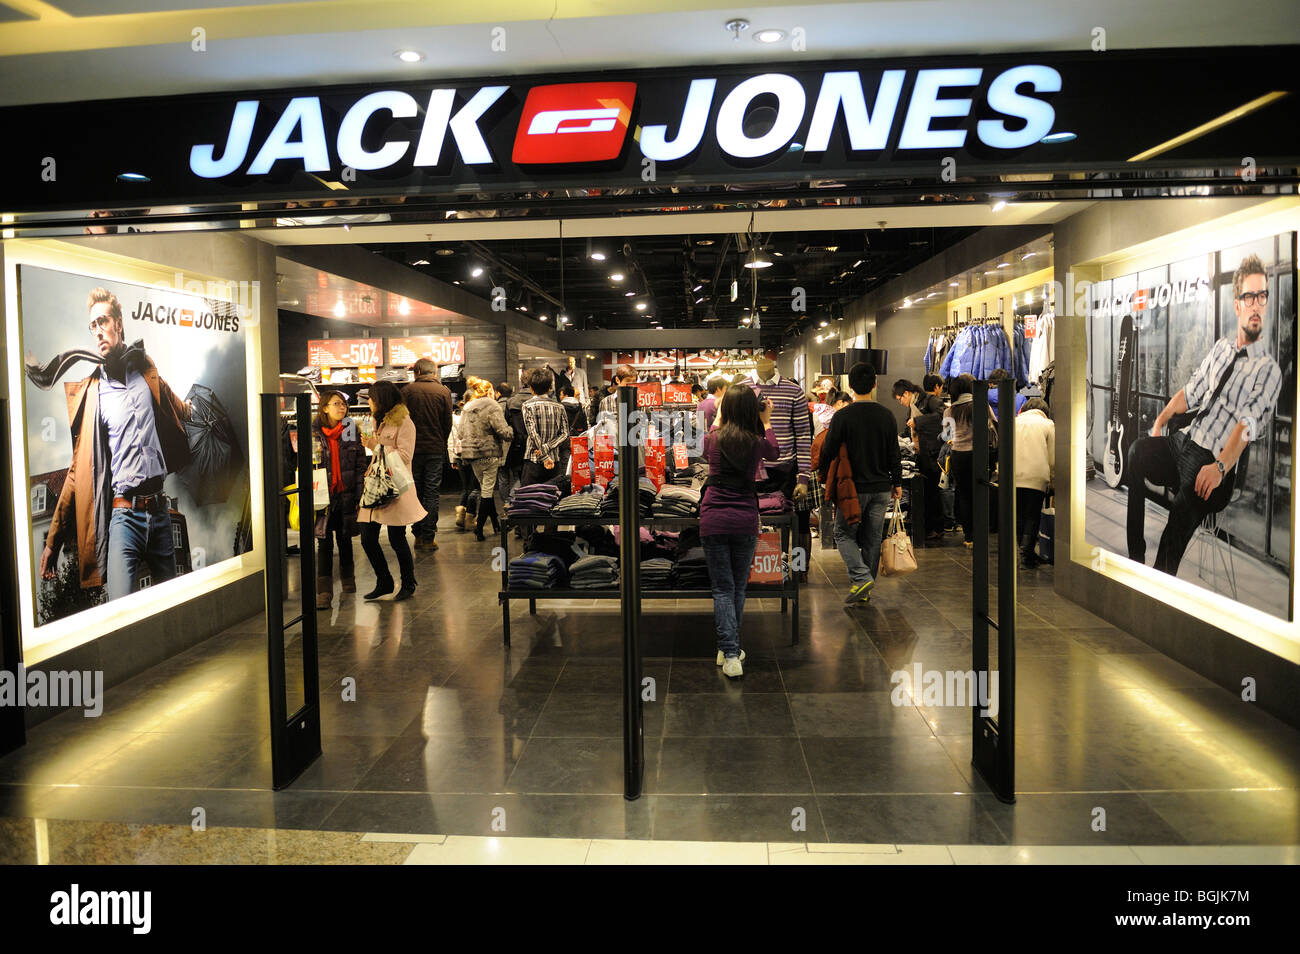 Jack & Jones shop in Dayuecheng shopping mall, Beijing, China Stock Photo -  Alamy